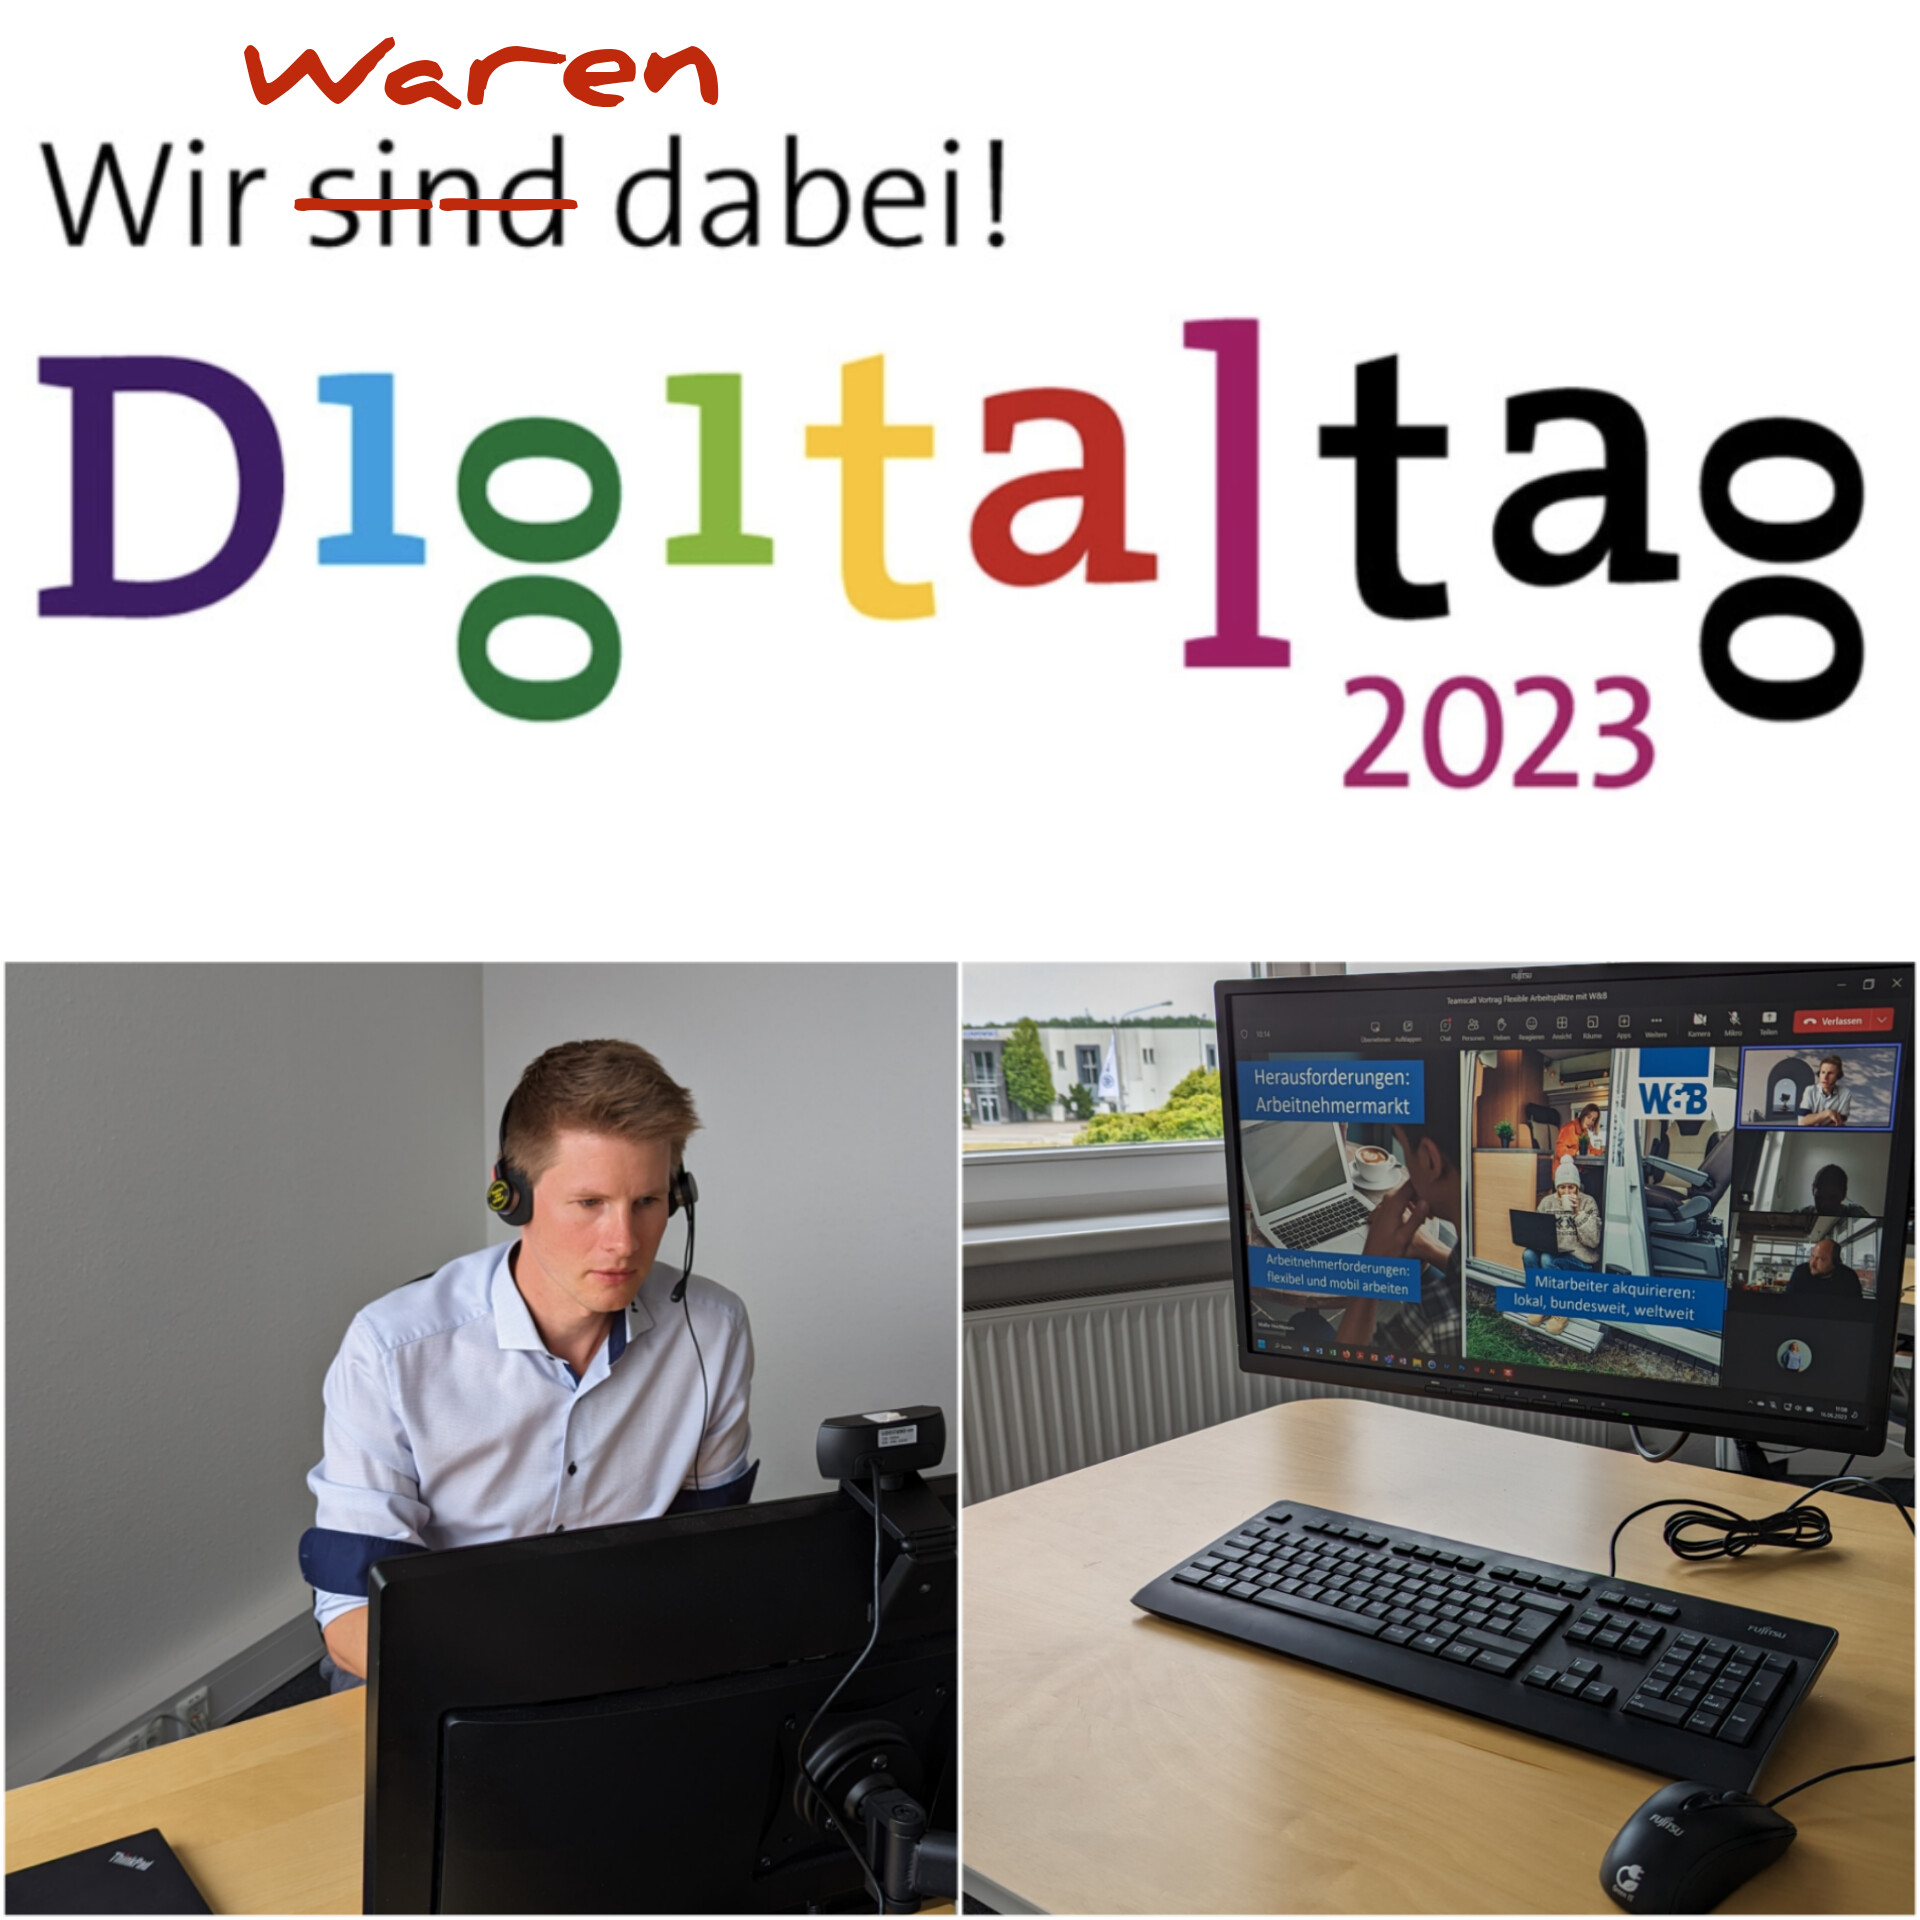 Digitaltag 2023